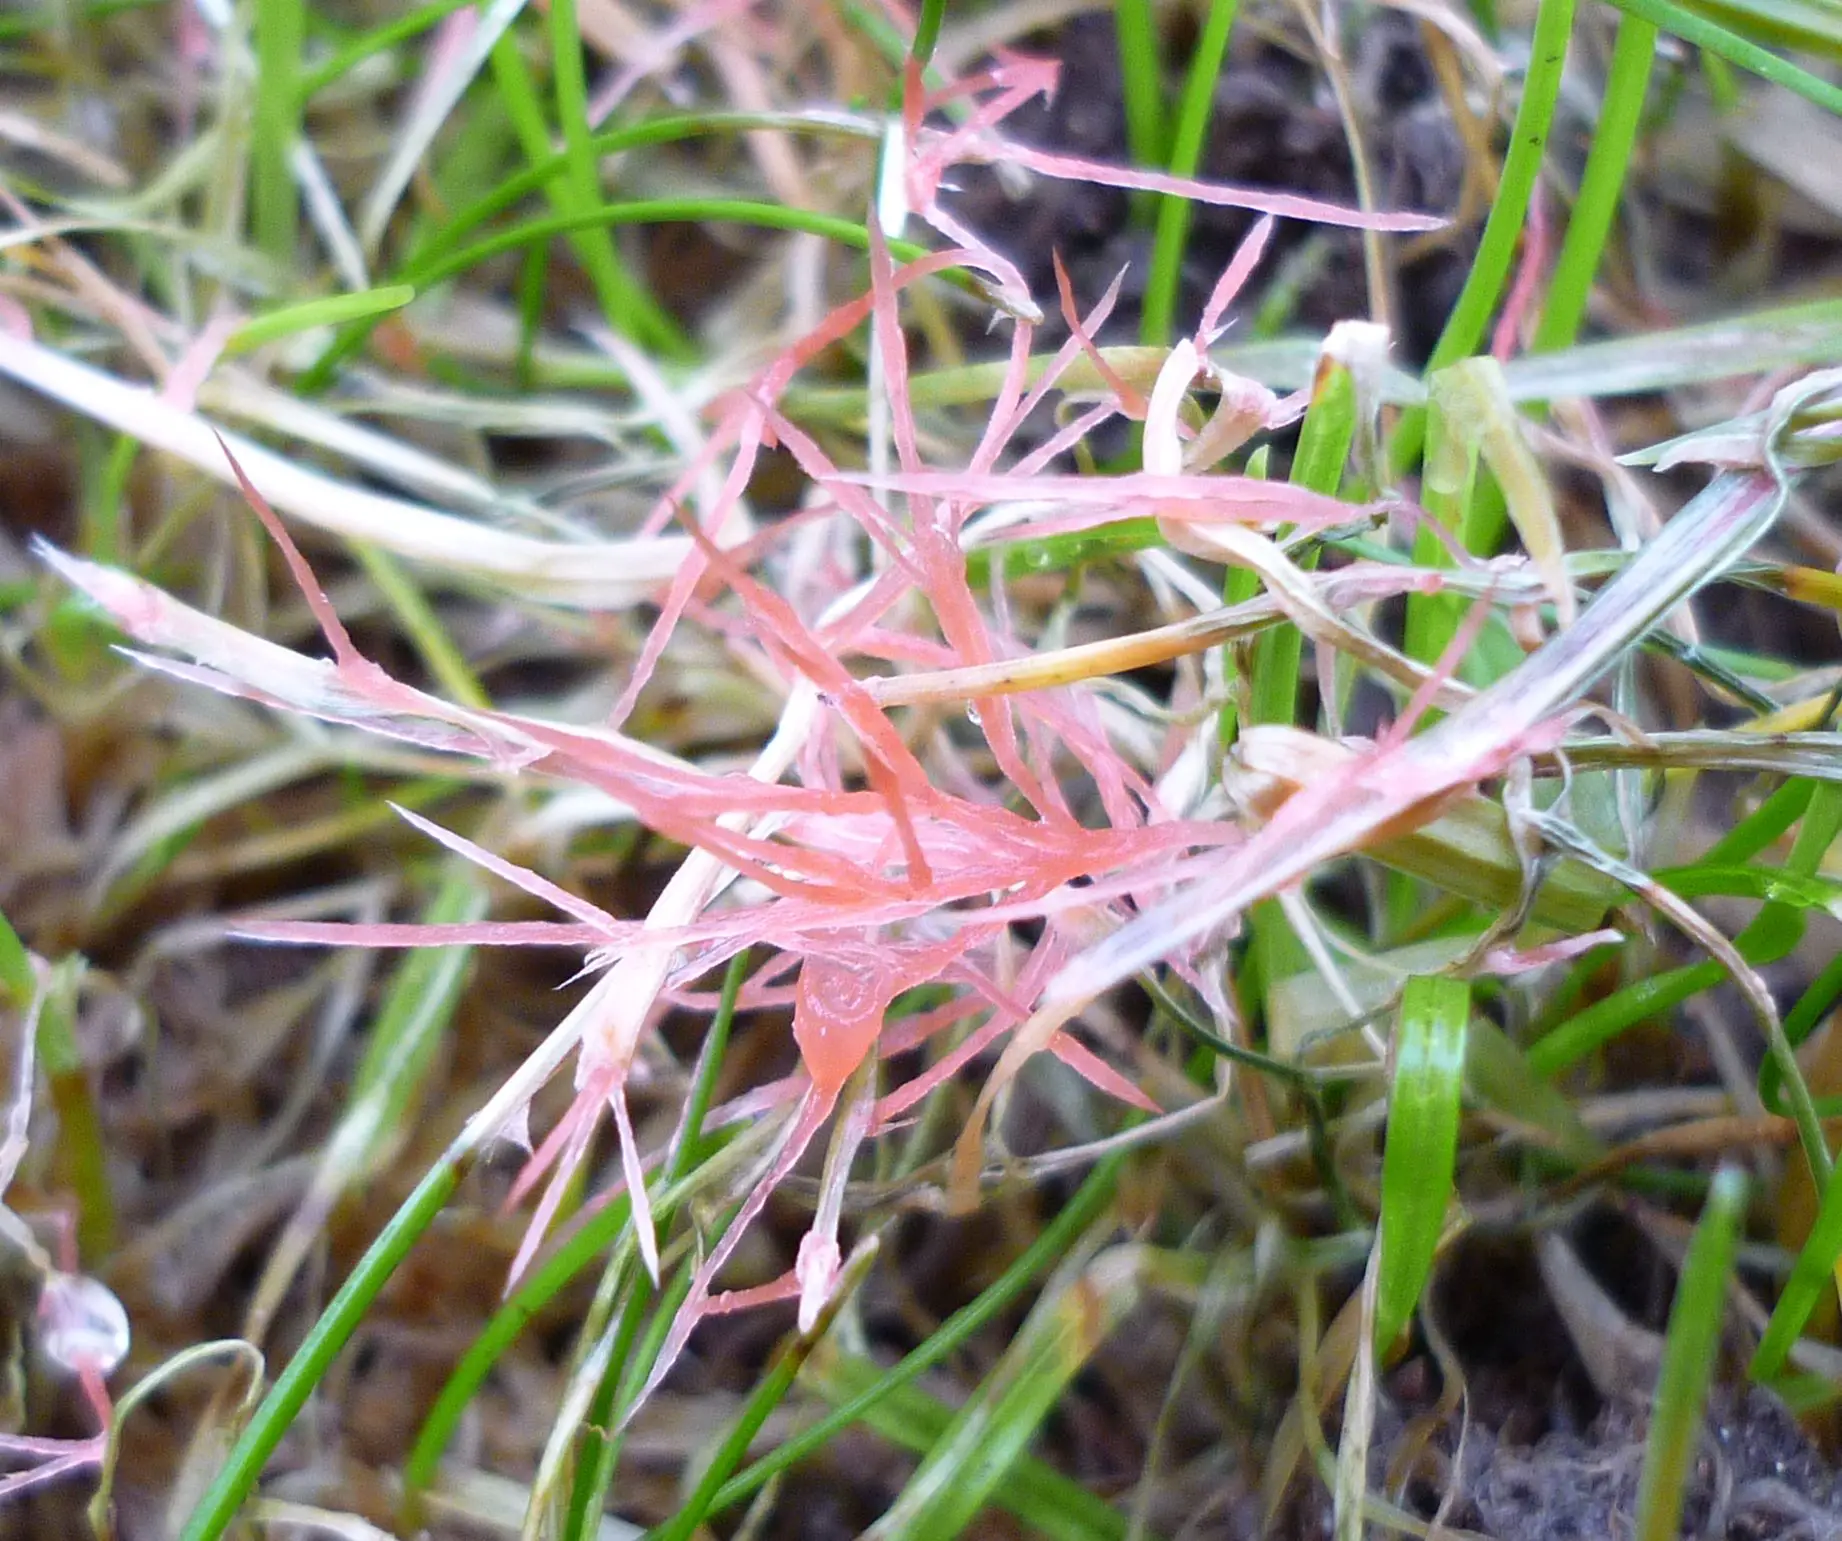 Red thread fungus (laetisaria fuciformis)